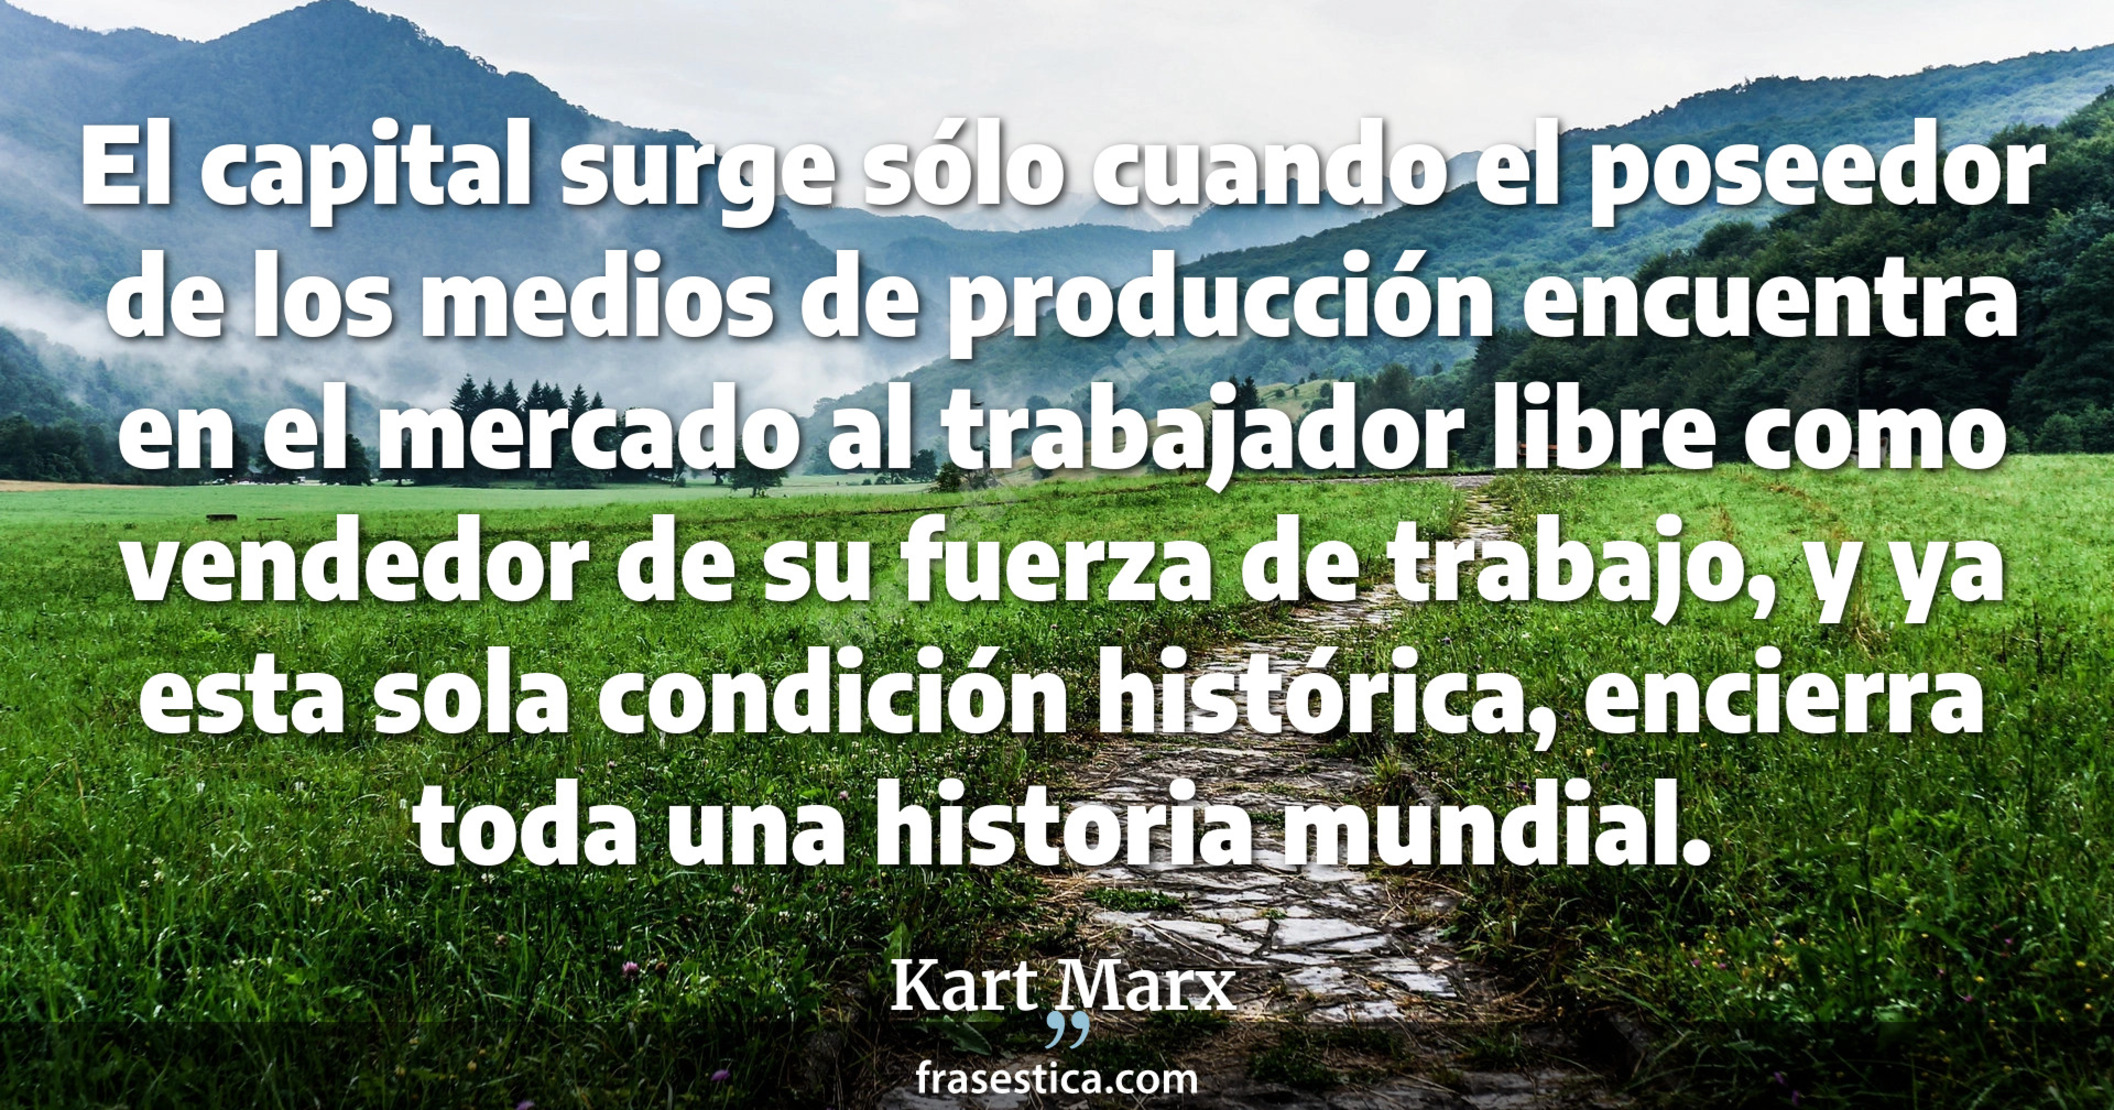 El capital surge sólo cuando el poseedor de los medios de producción encuentra en el mercado al trabajador libre como vendedor de su fuerza de trabajo, y ya esta sola condición histórica, encierra toda una historia mundial. - Kart Marx